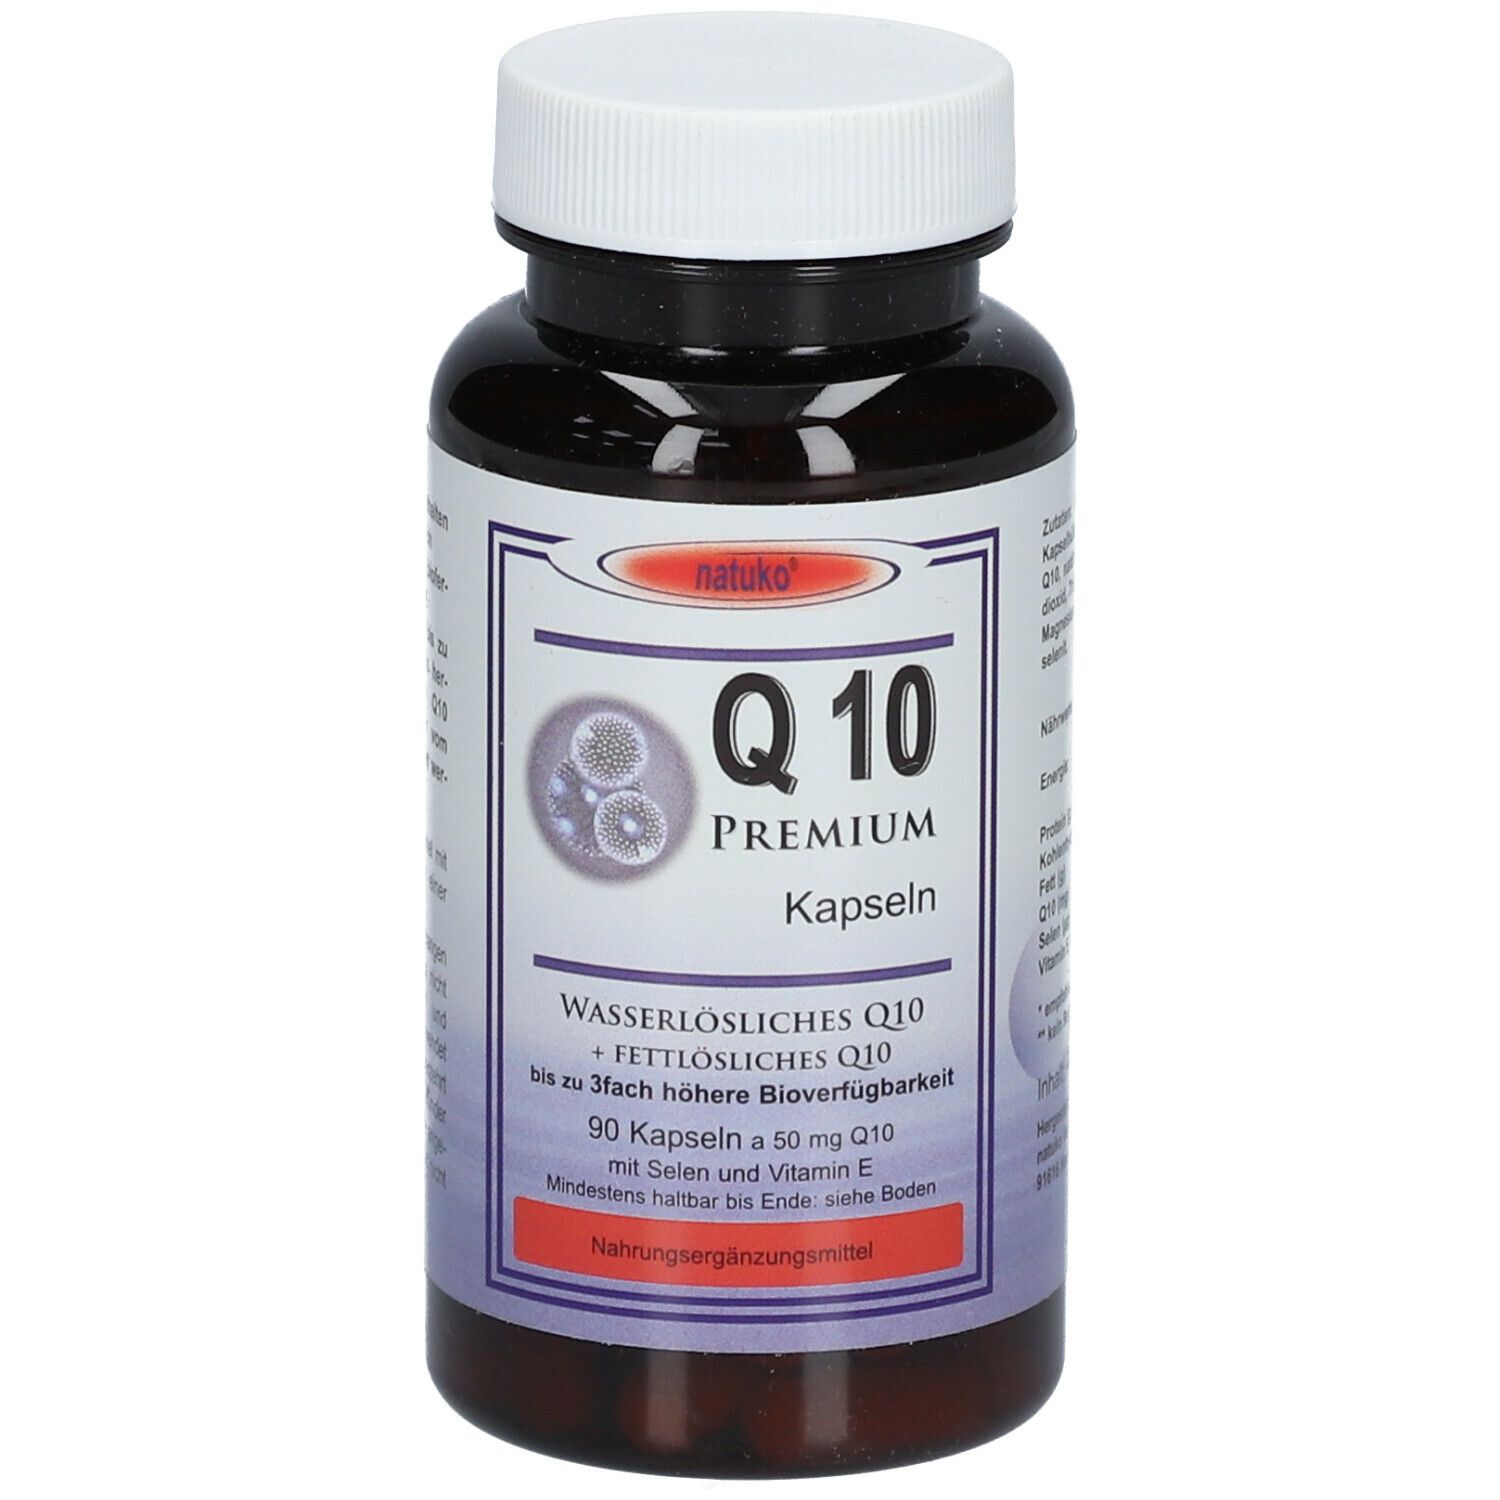 Q10 Kapseln 50 mg natürlich wasserlöslich